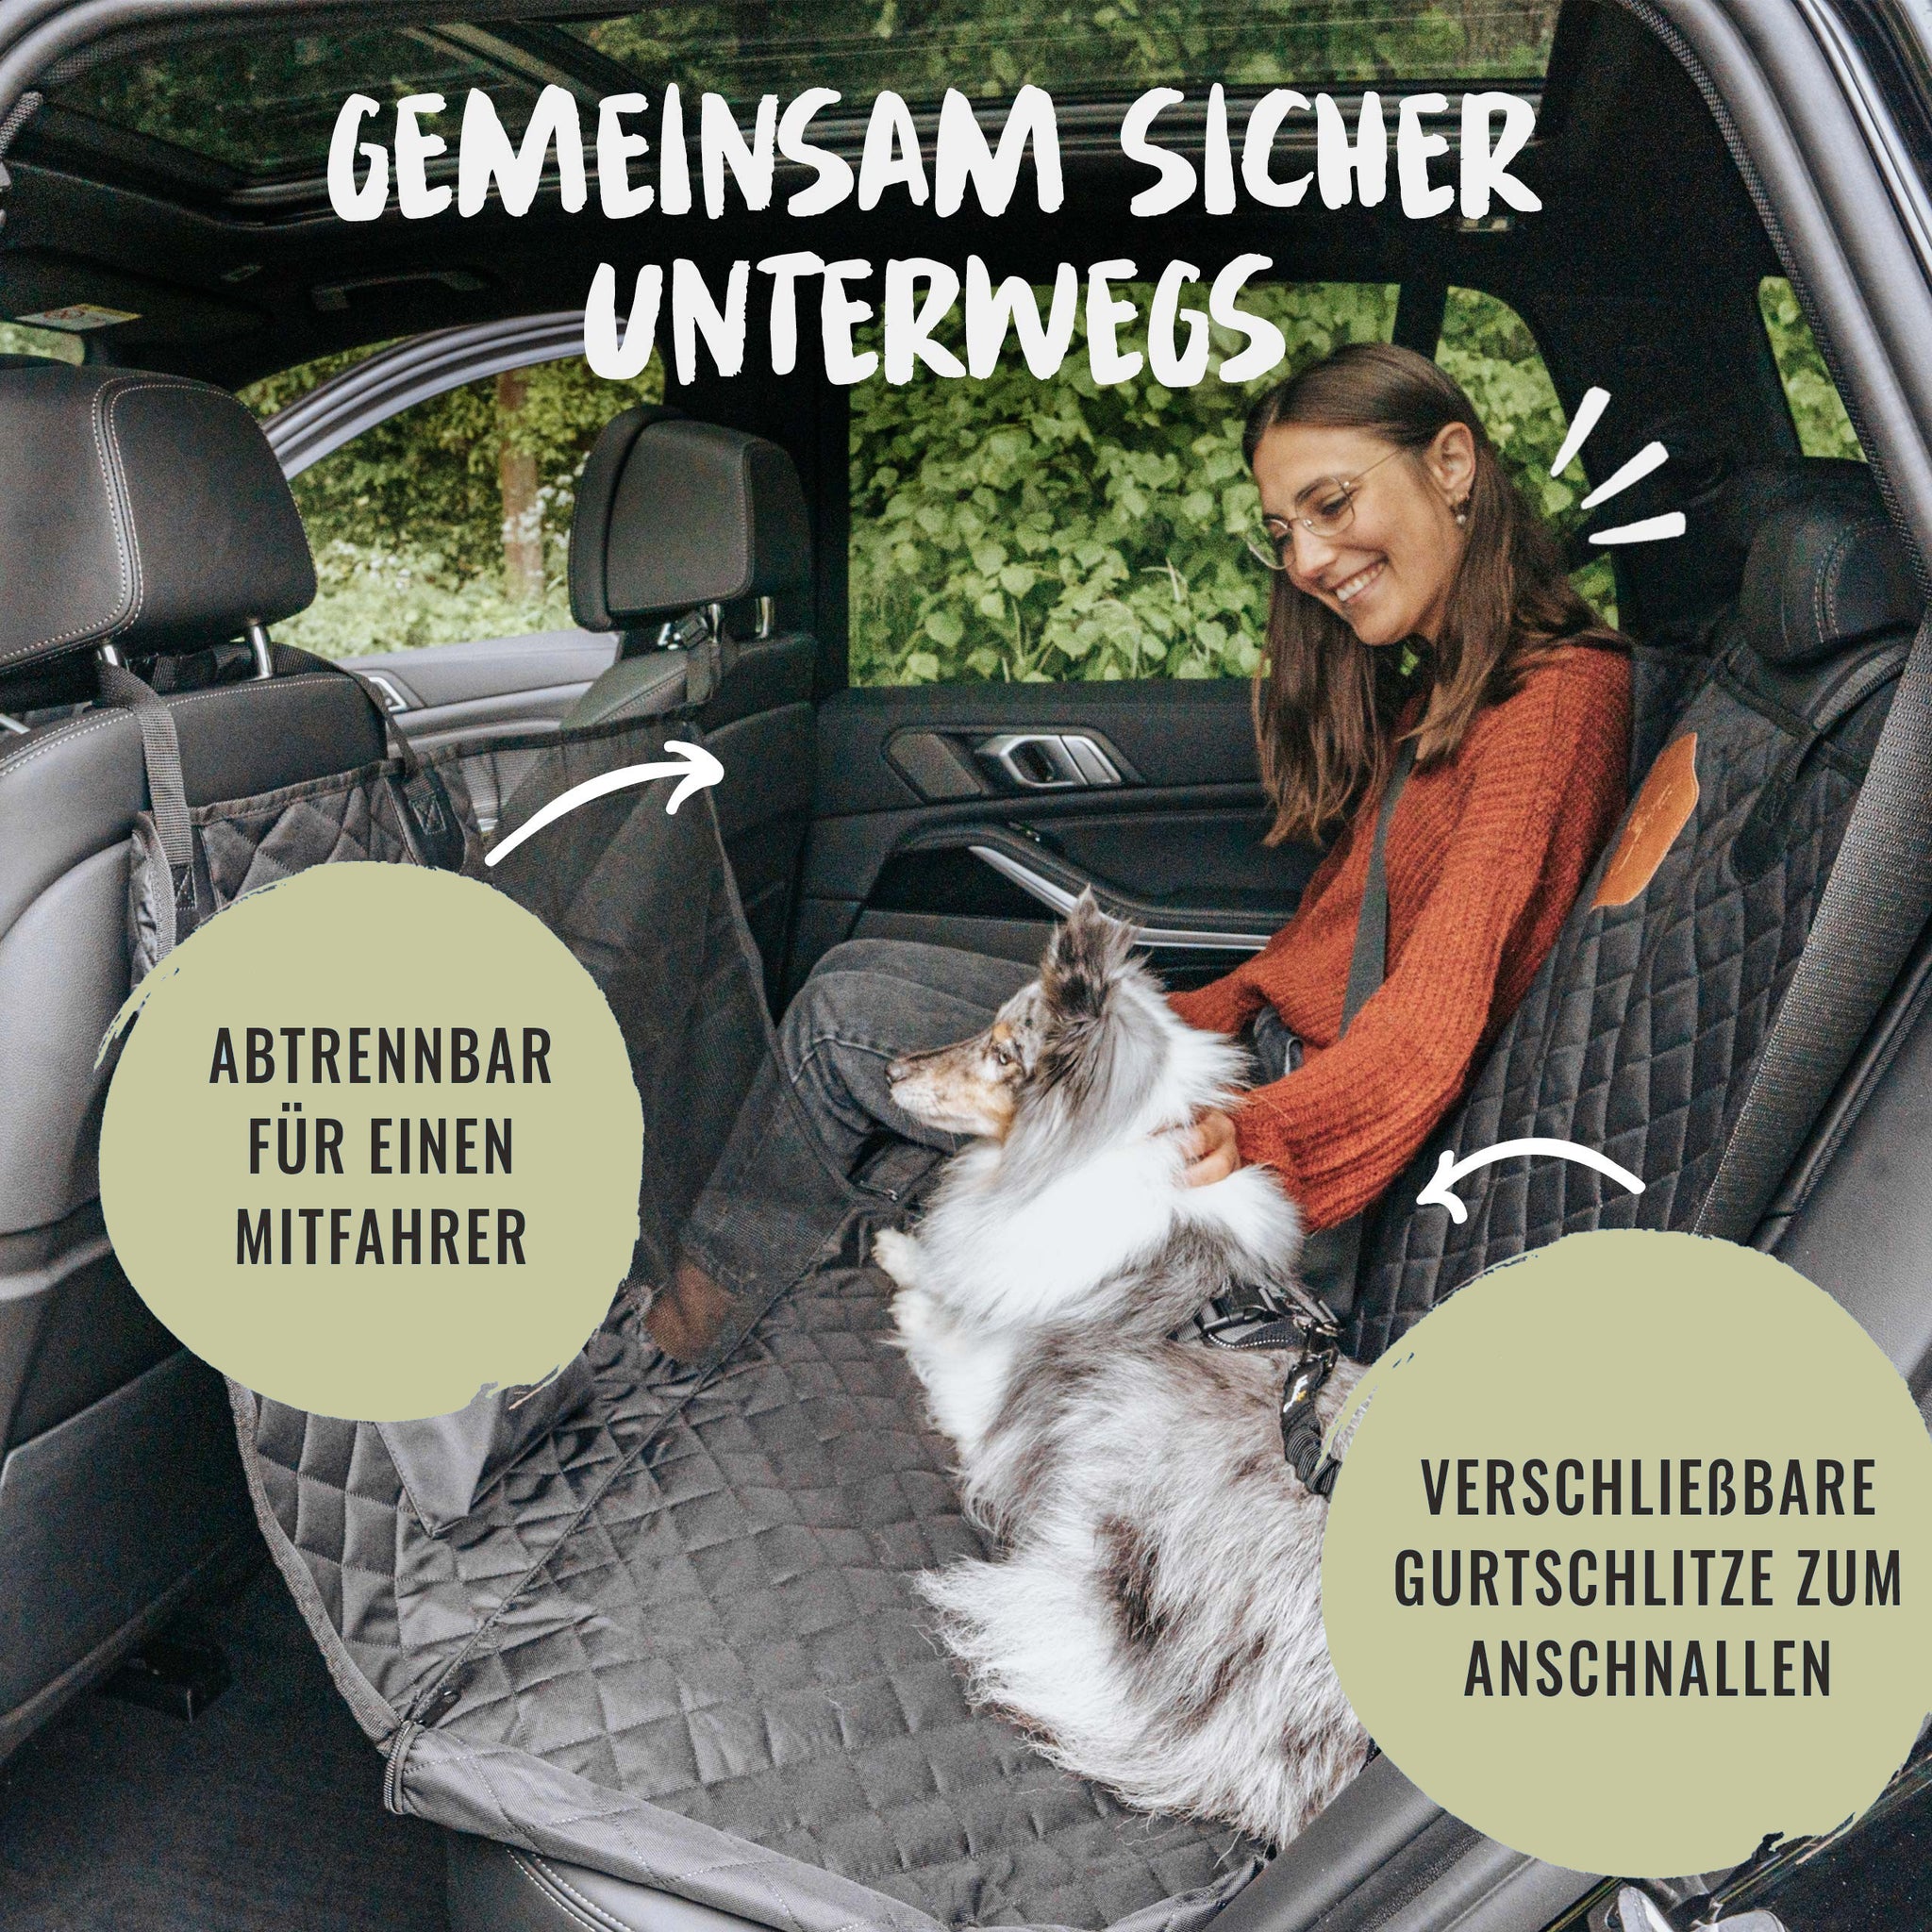 Das Paket-Angebot für Hunde im Auto bietet einen praktischen Rücksitzschutz und Sicherheitsgurt, der den gezeigten Hund mit Herrchen und Frauchen sicher mitfahren lässt.